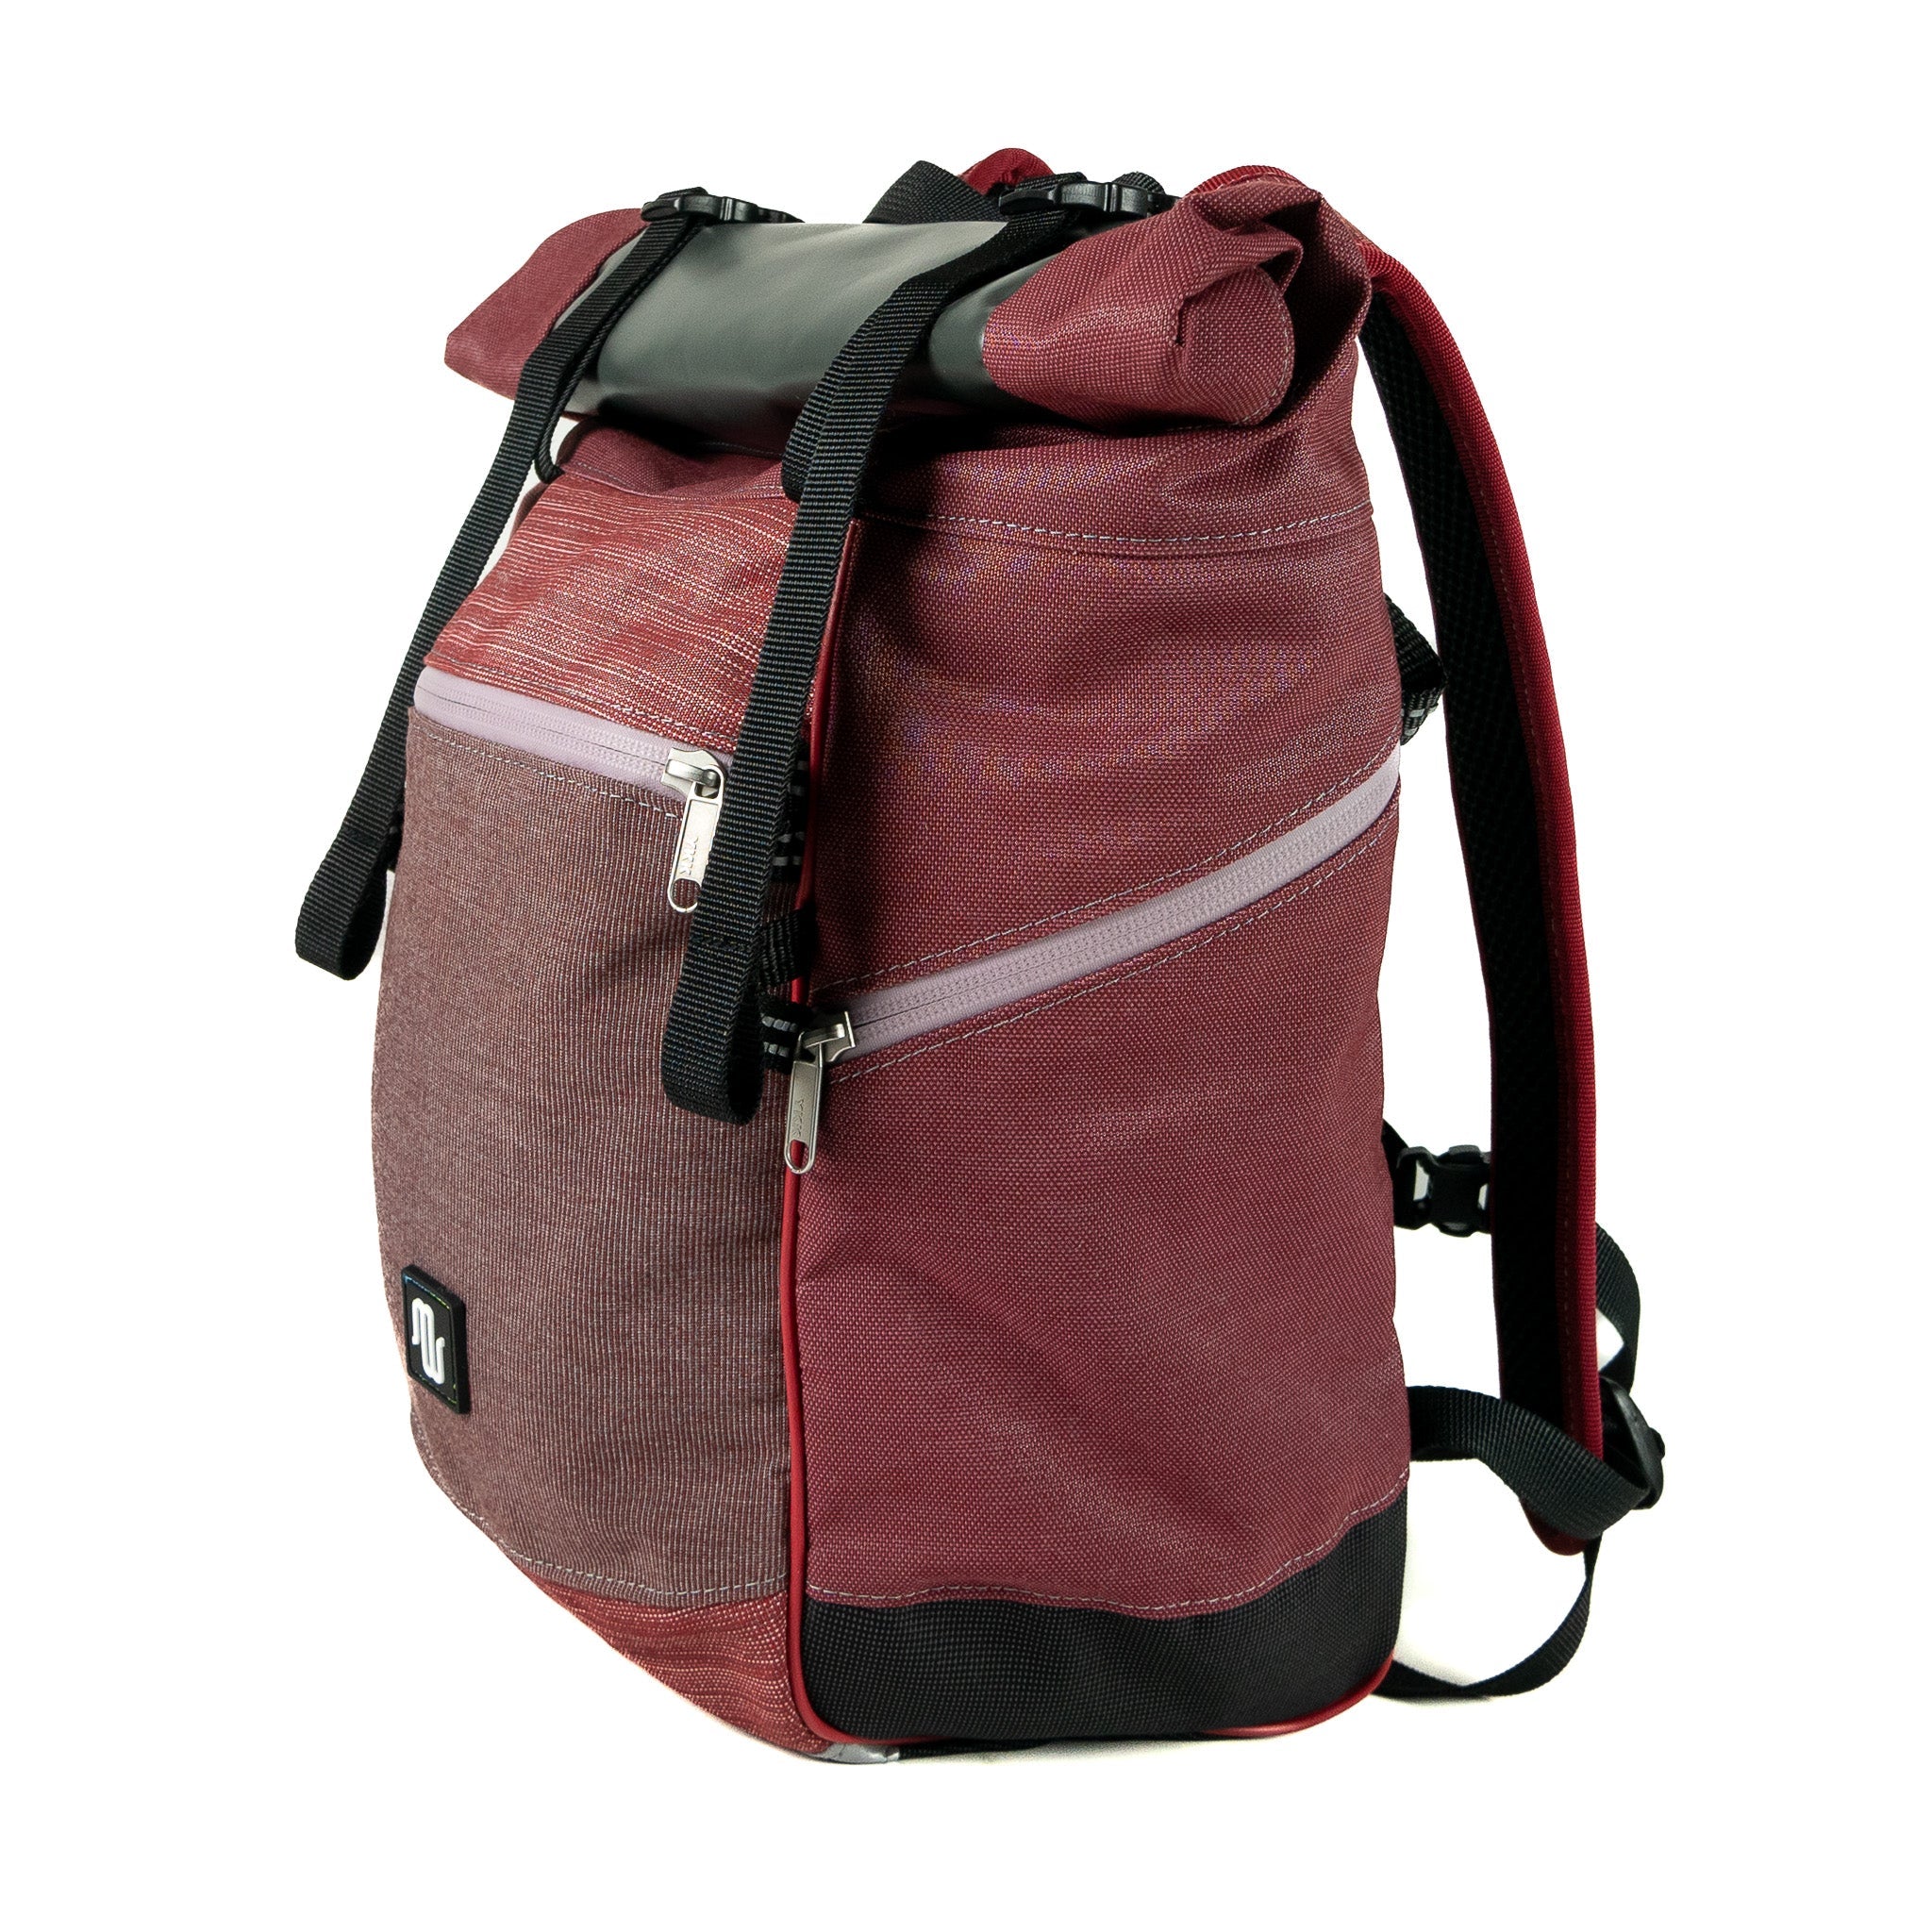 Backpack - BUDDY No. 149 - Backpack - medencebag